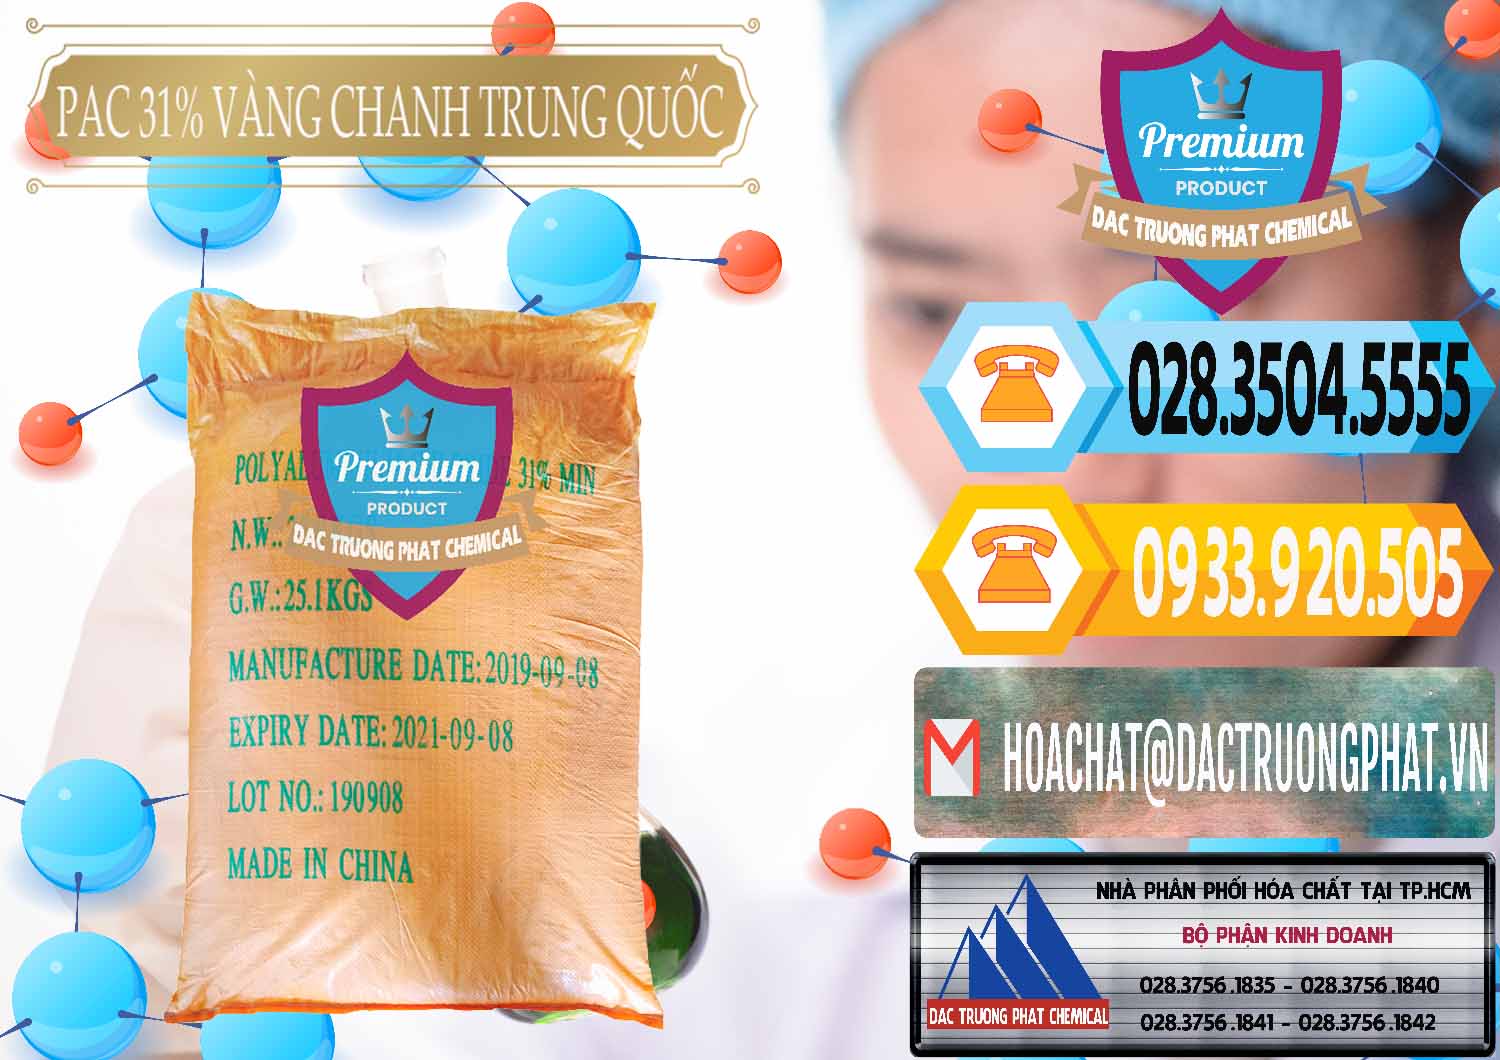 Nơi chuyên phân phối và bán PAC - Polyaluminium Chloride 28-31% Vàng Chanh Trung Quốc China - 0109 - Cty chuyên cung cấp _ kinh doanh hóa chất tại TP.HCM - hoachattayrua.net